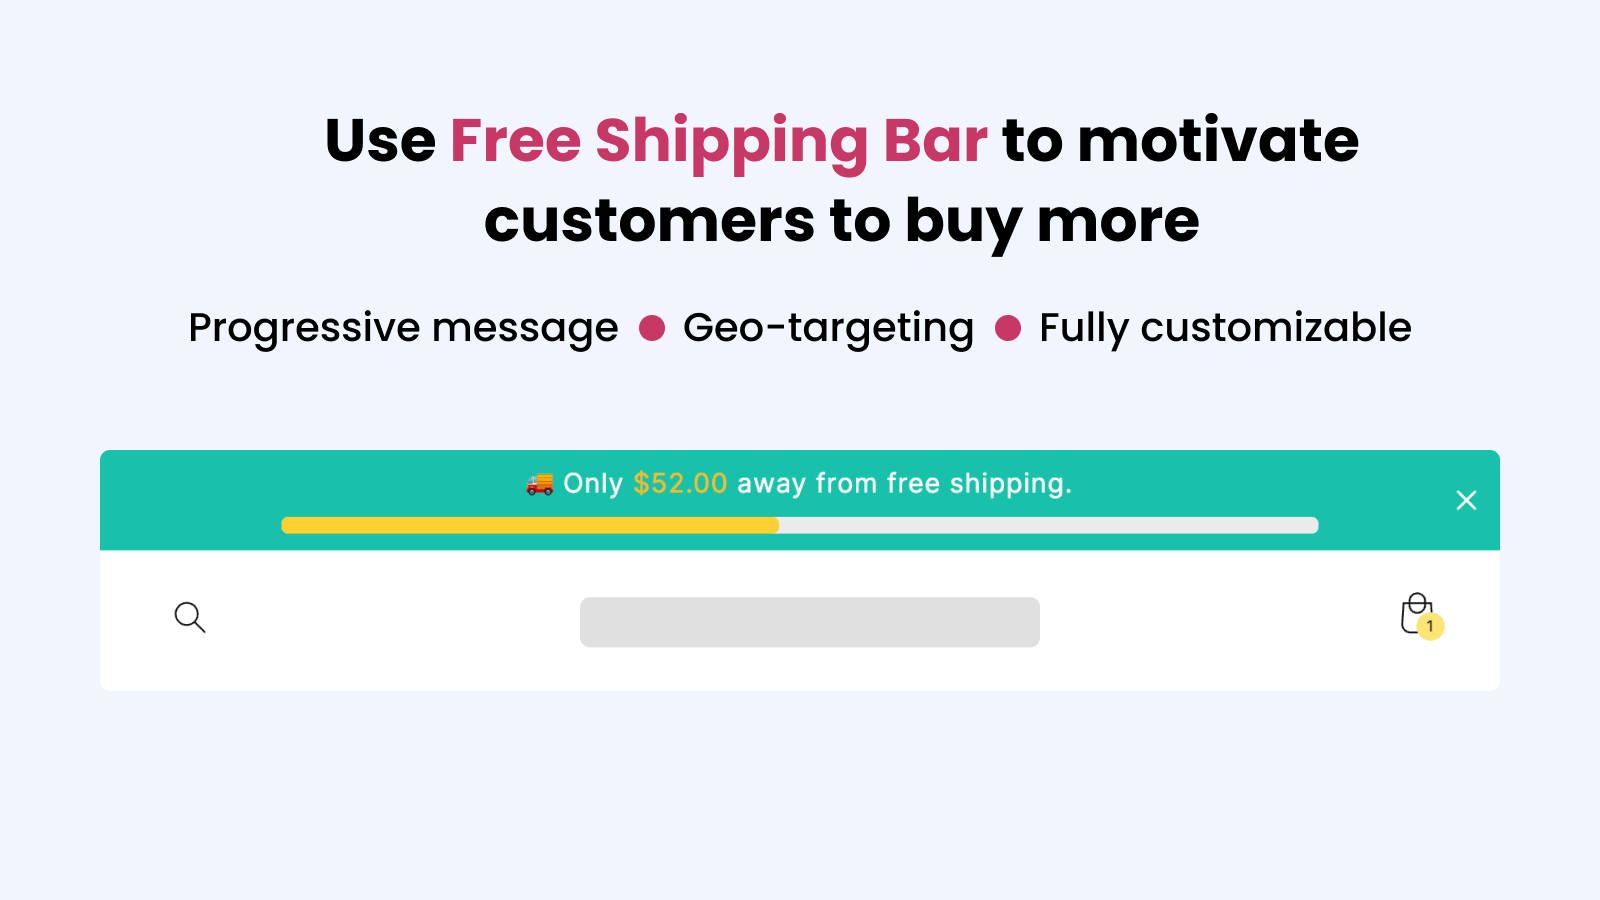 Utiliza la barra de envío gratuito para motivar a los clientes a comprar más